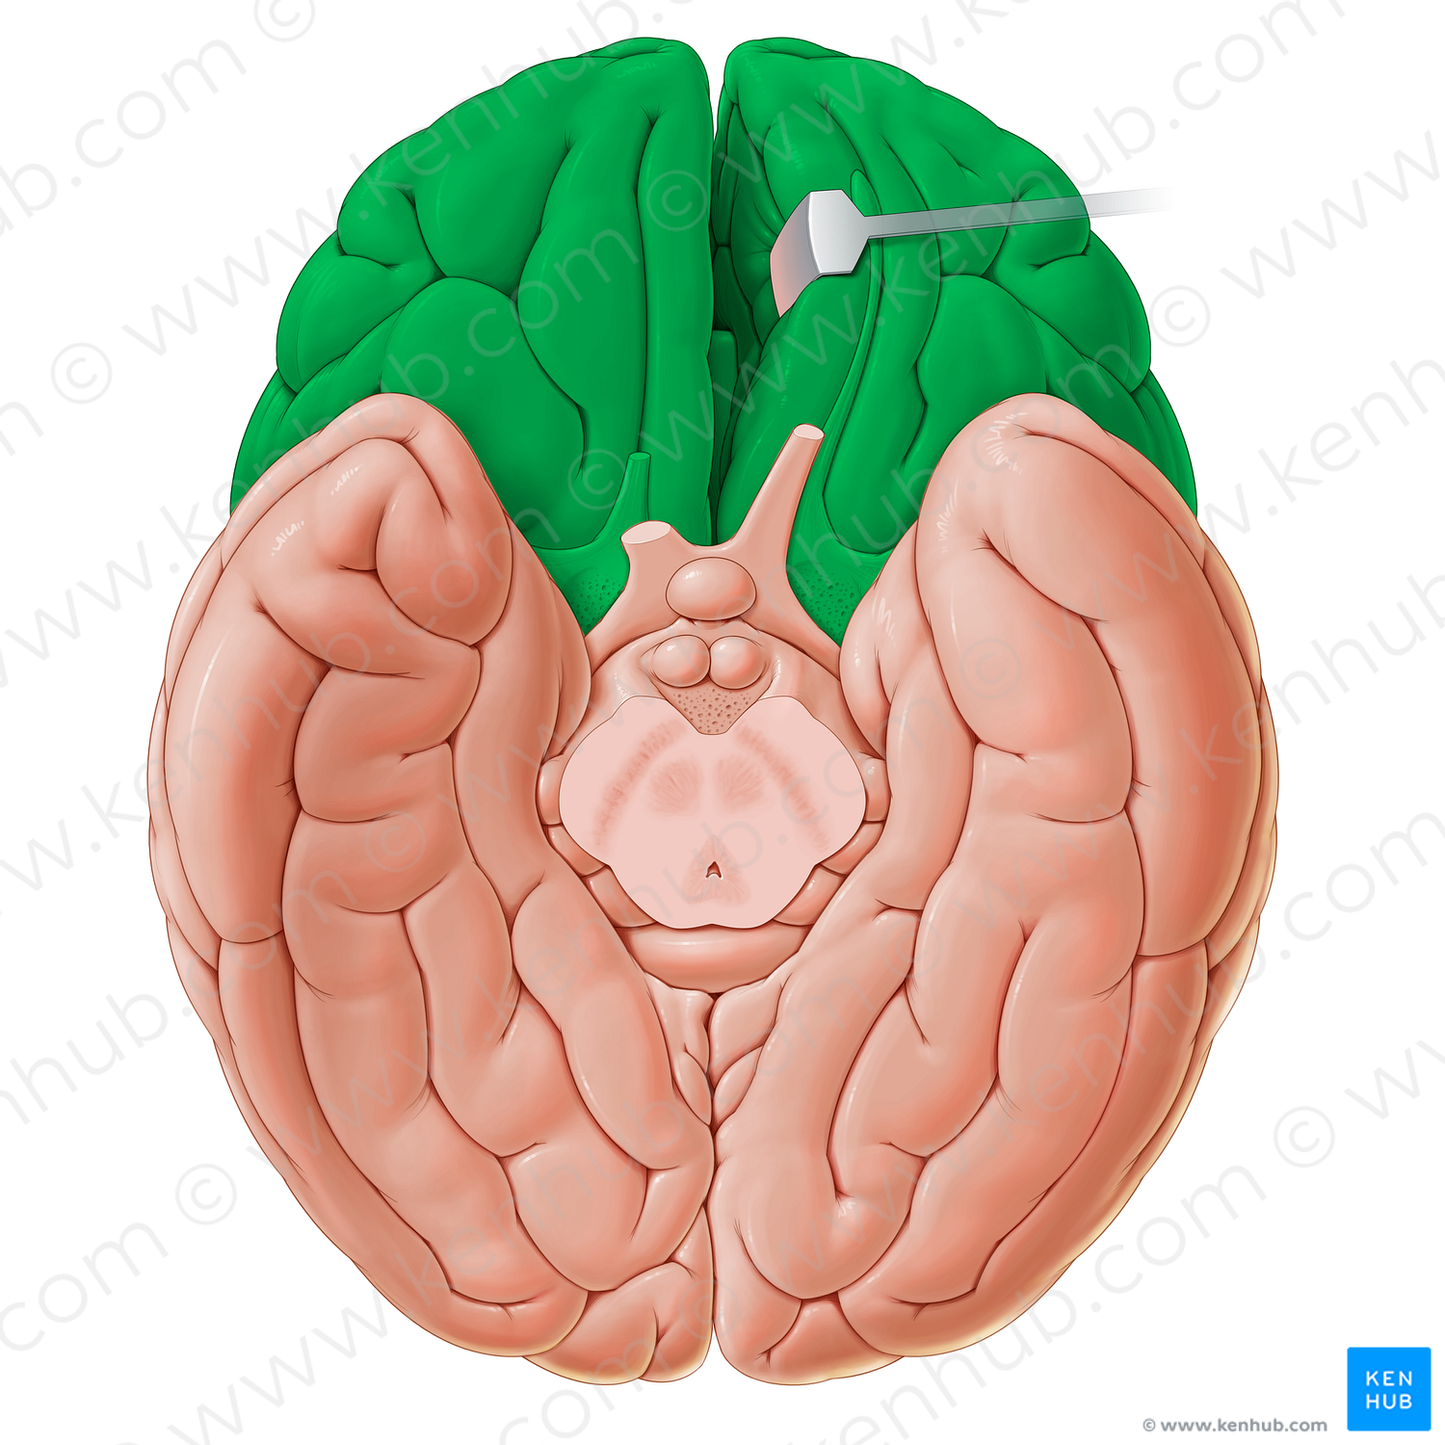 Anterior part of inferior surface of cerebrum (#20642)